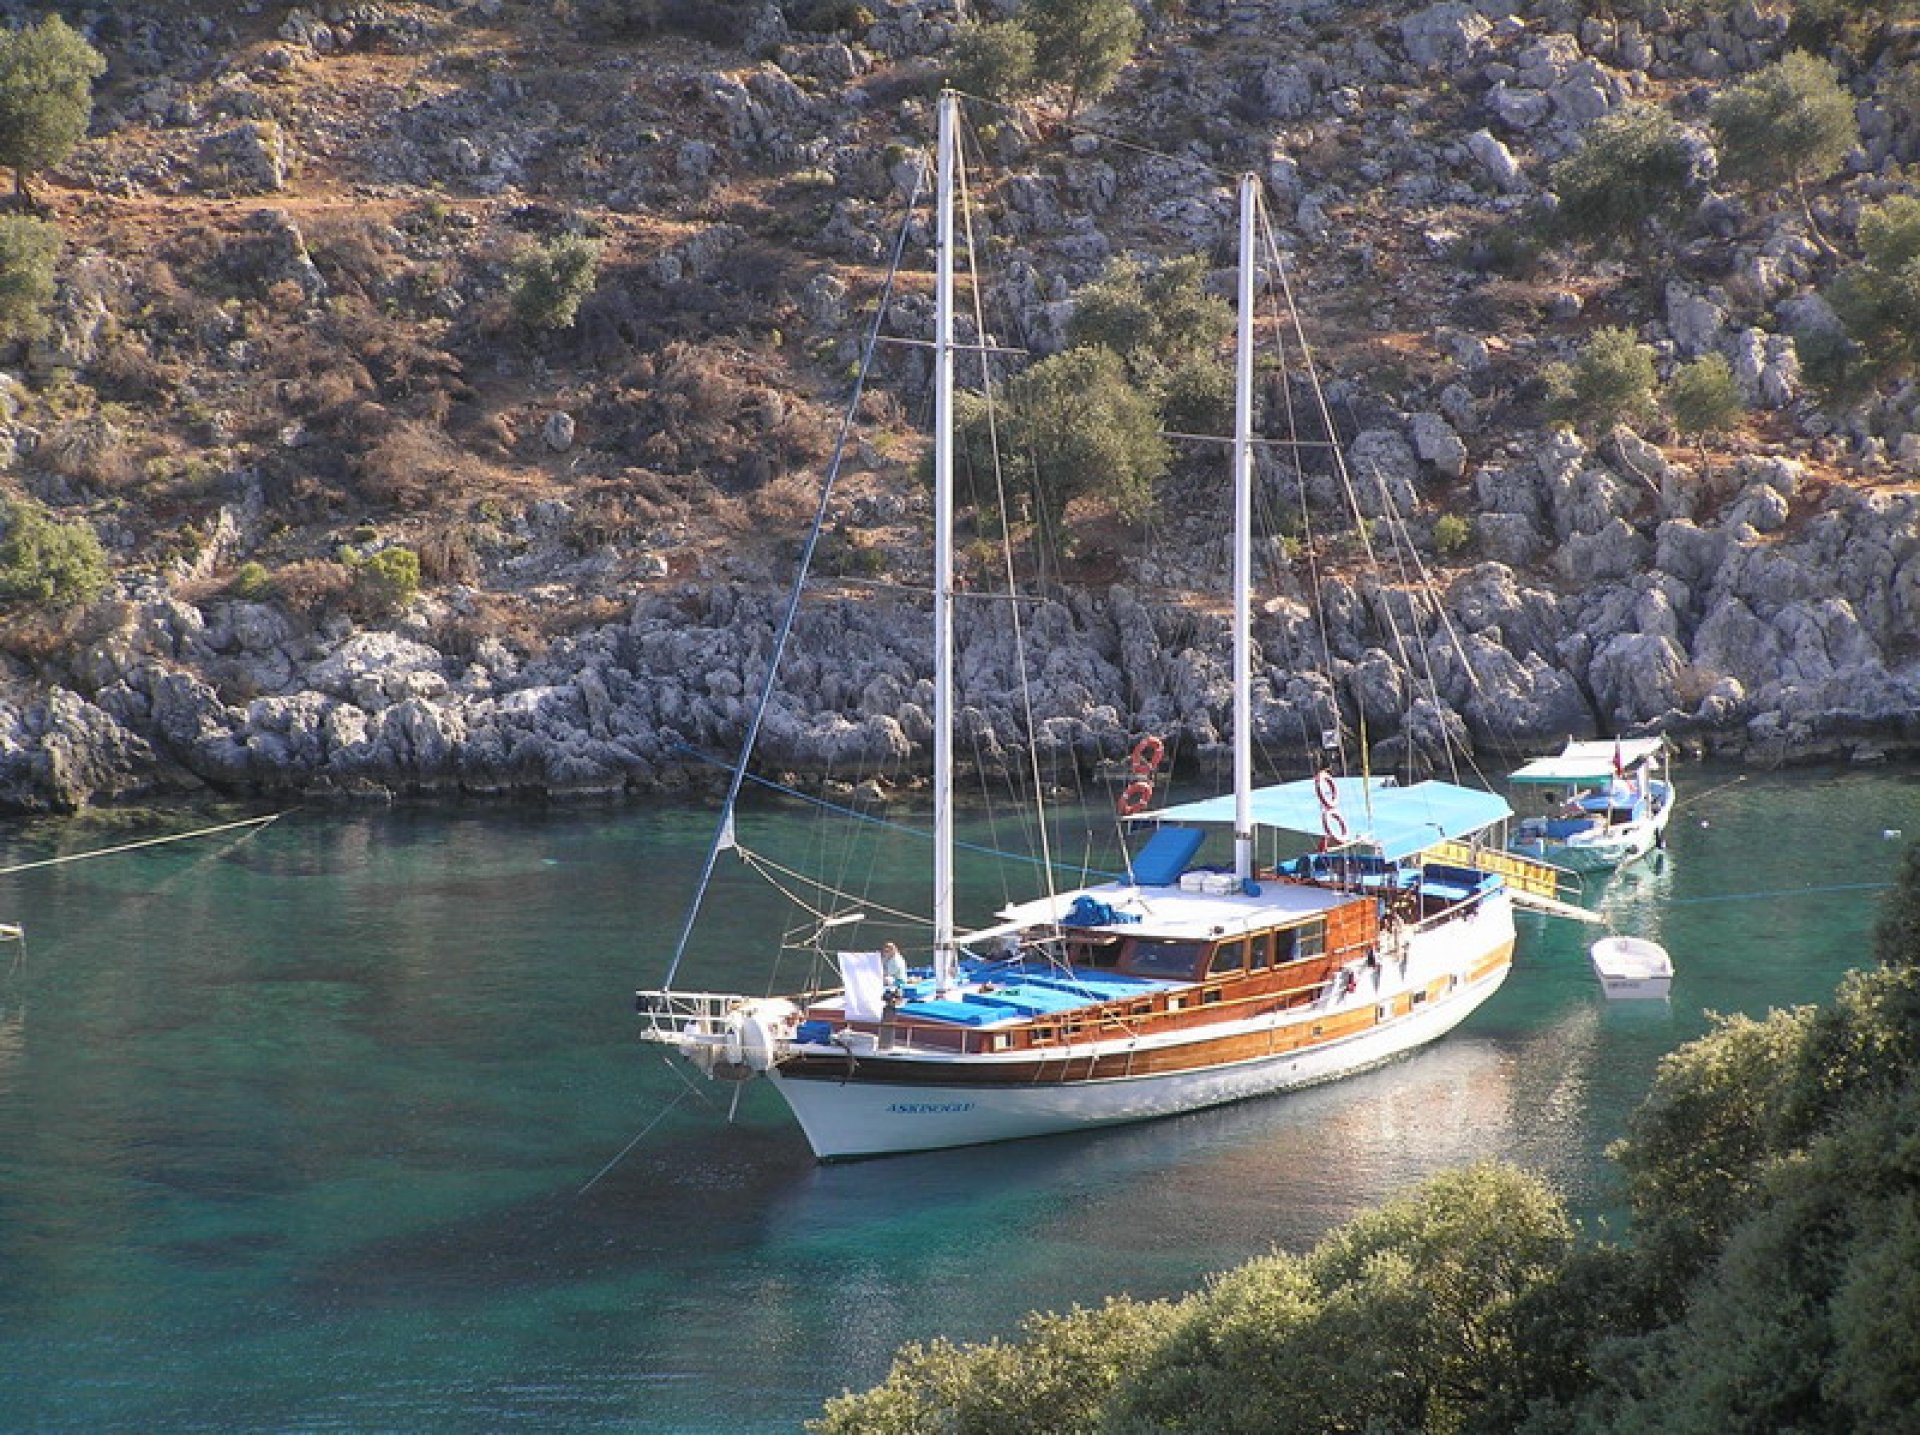 Antalya Boat Tour